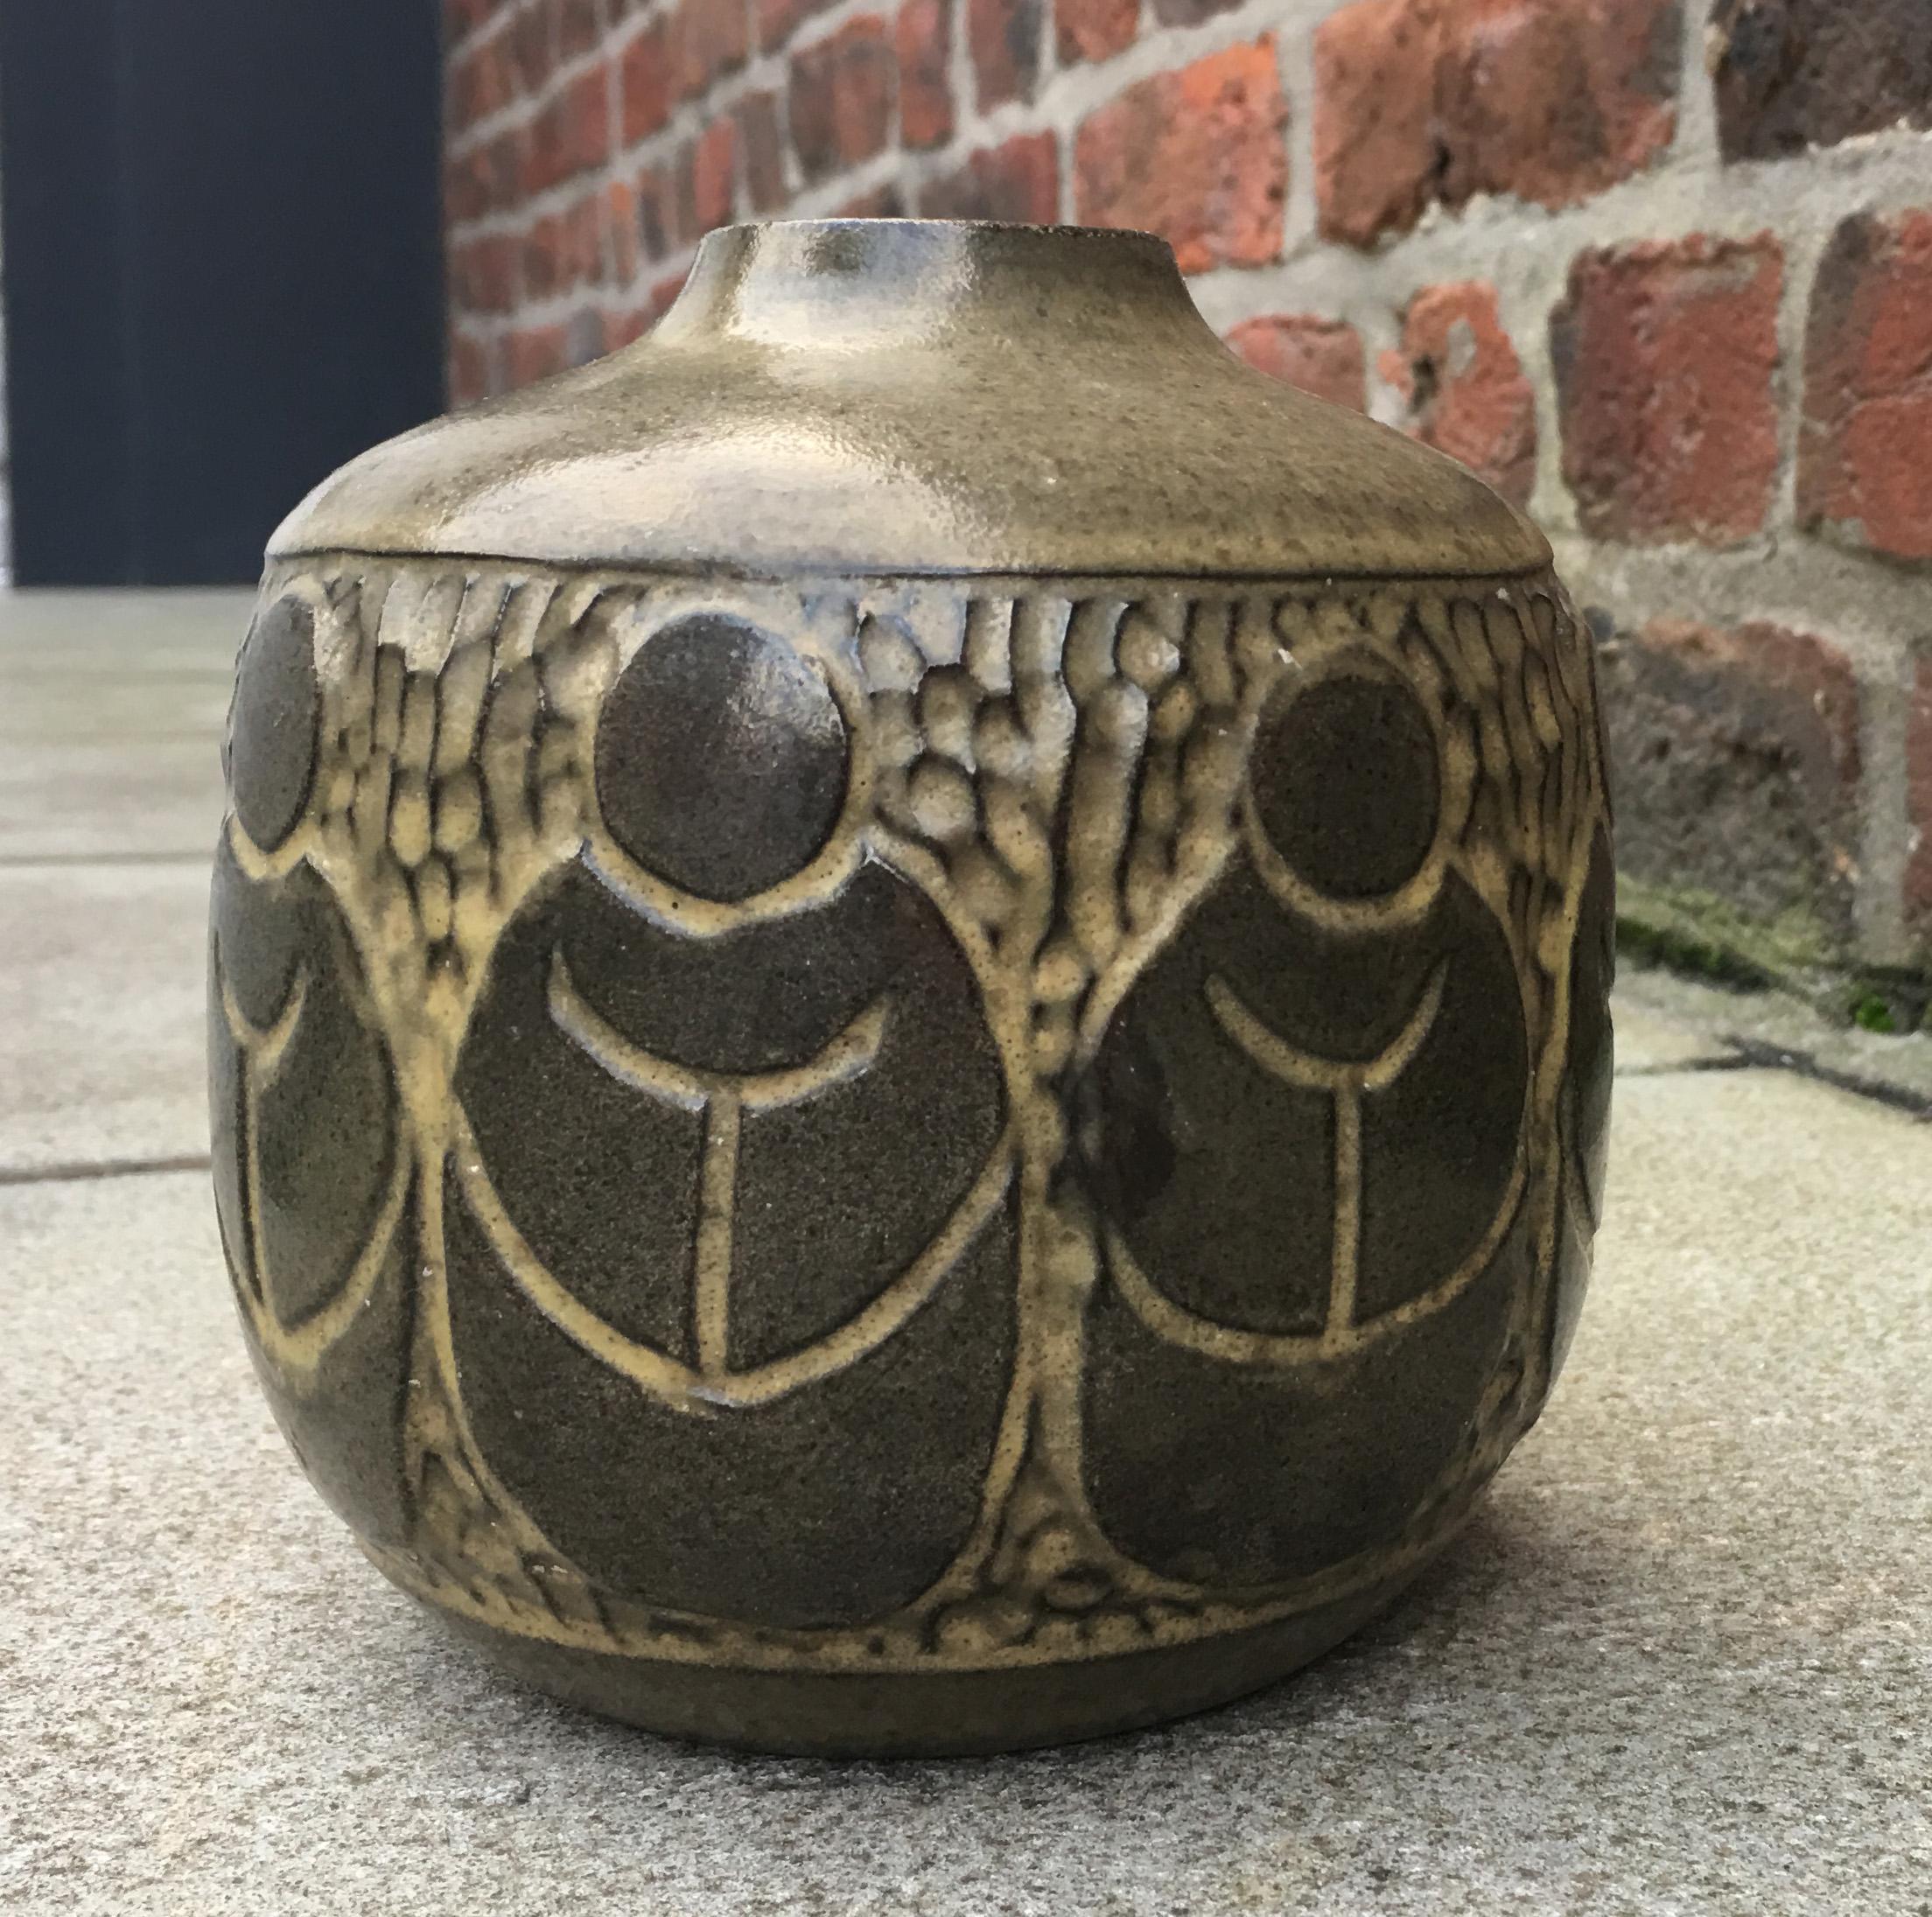 Ceramic by Sejer Keramik, 1960s.